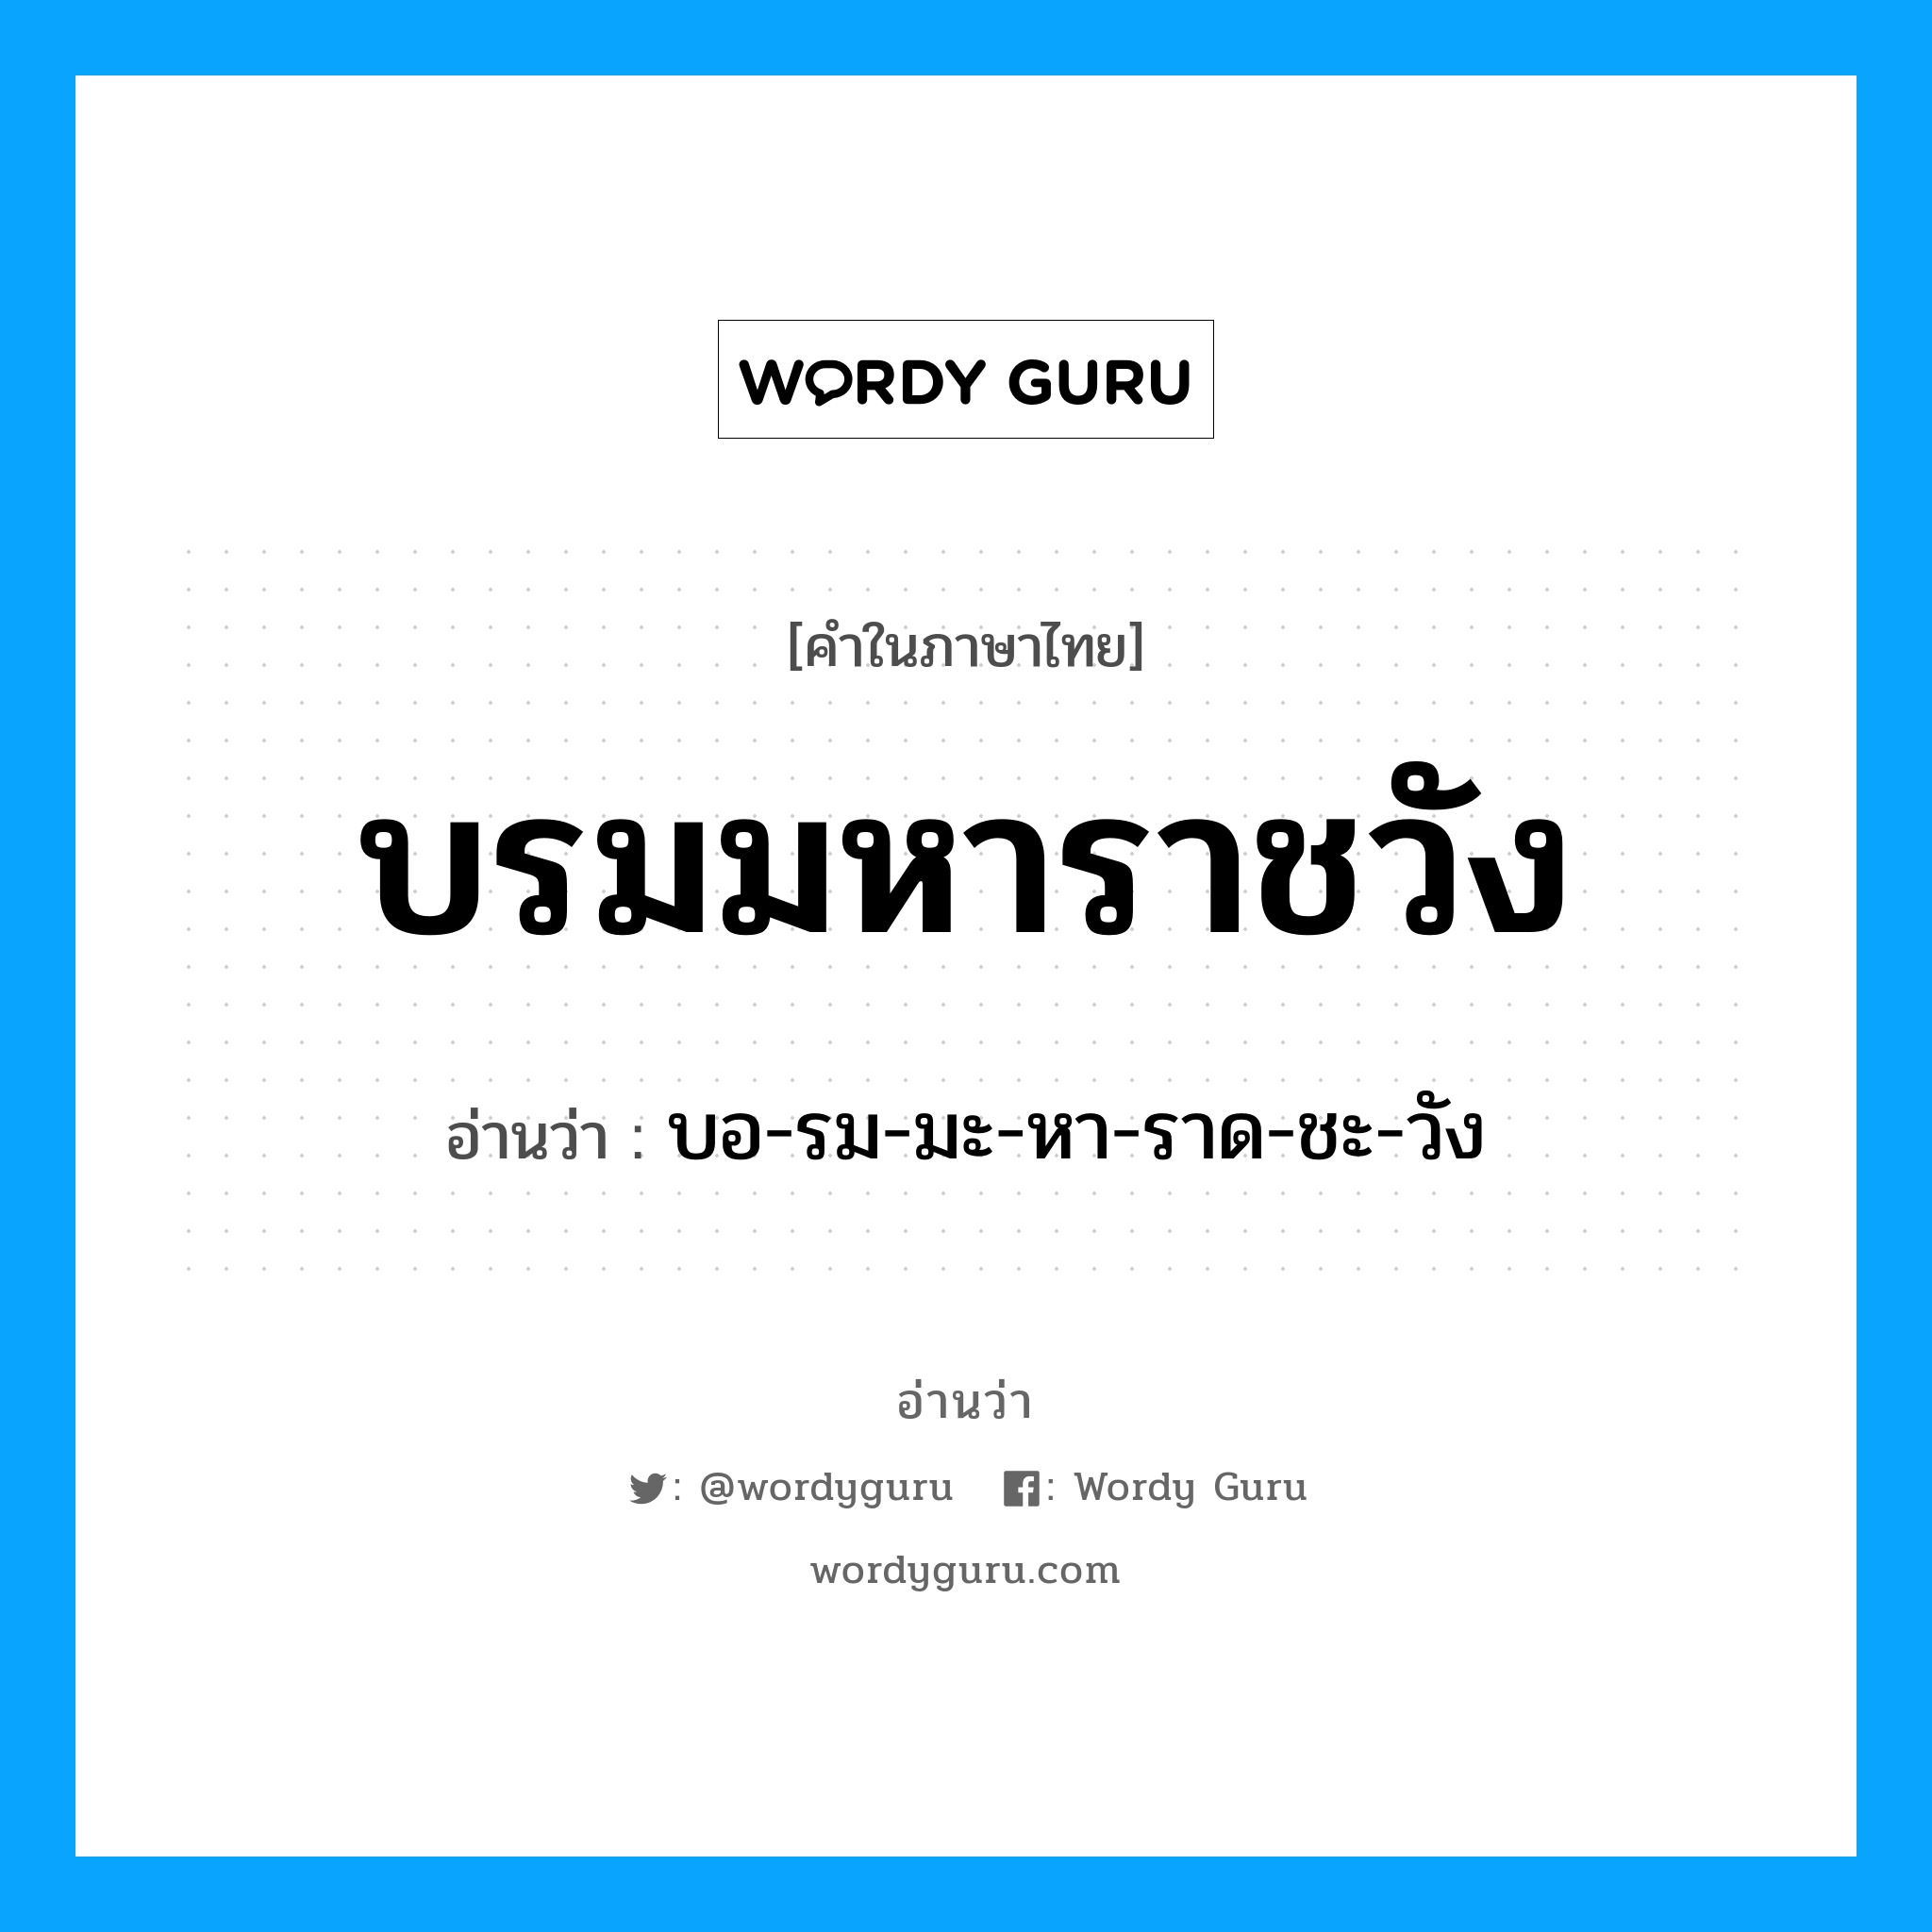 บอ-รม-มะ-หา-ราด-ชะ-วัง เป็นคำอ่านของคำไหน?, คำในภาษาไทย บอ-รม-มะ-หา-ราด-ชะ-วัง อ่านว่า บรมมหาราชวัง